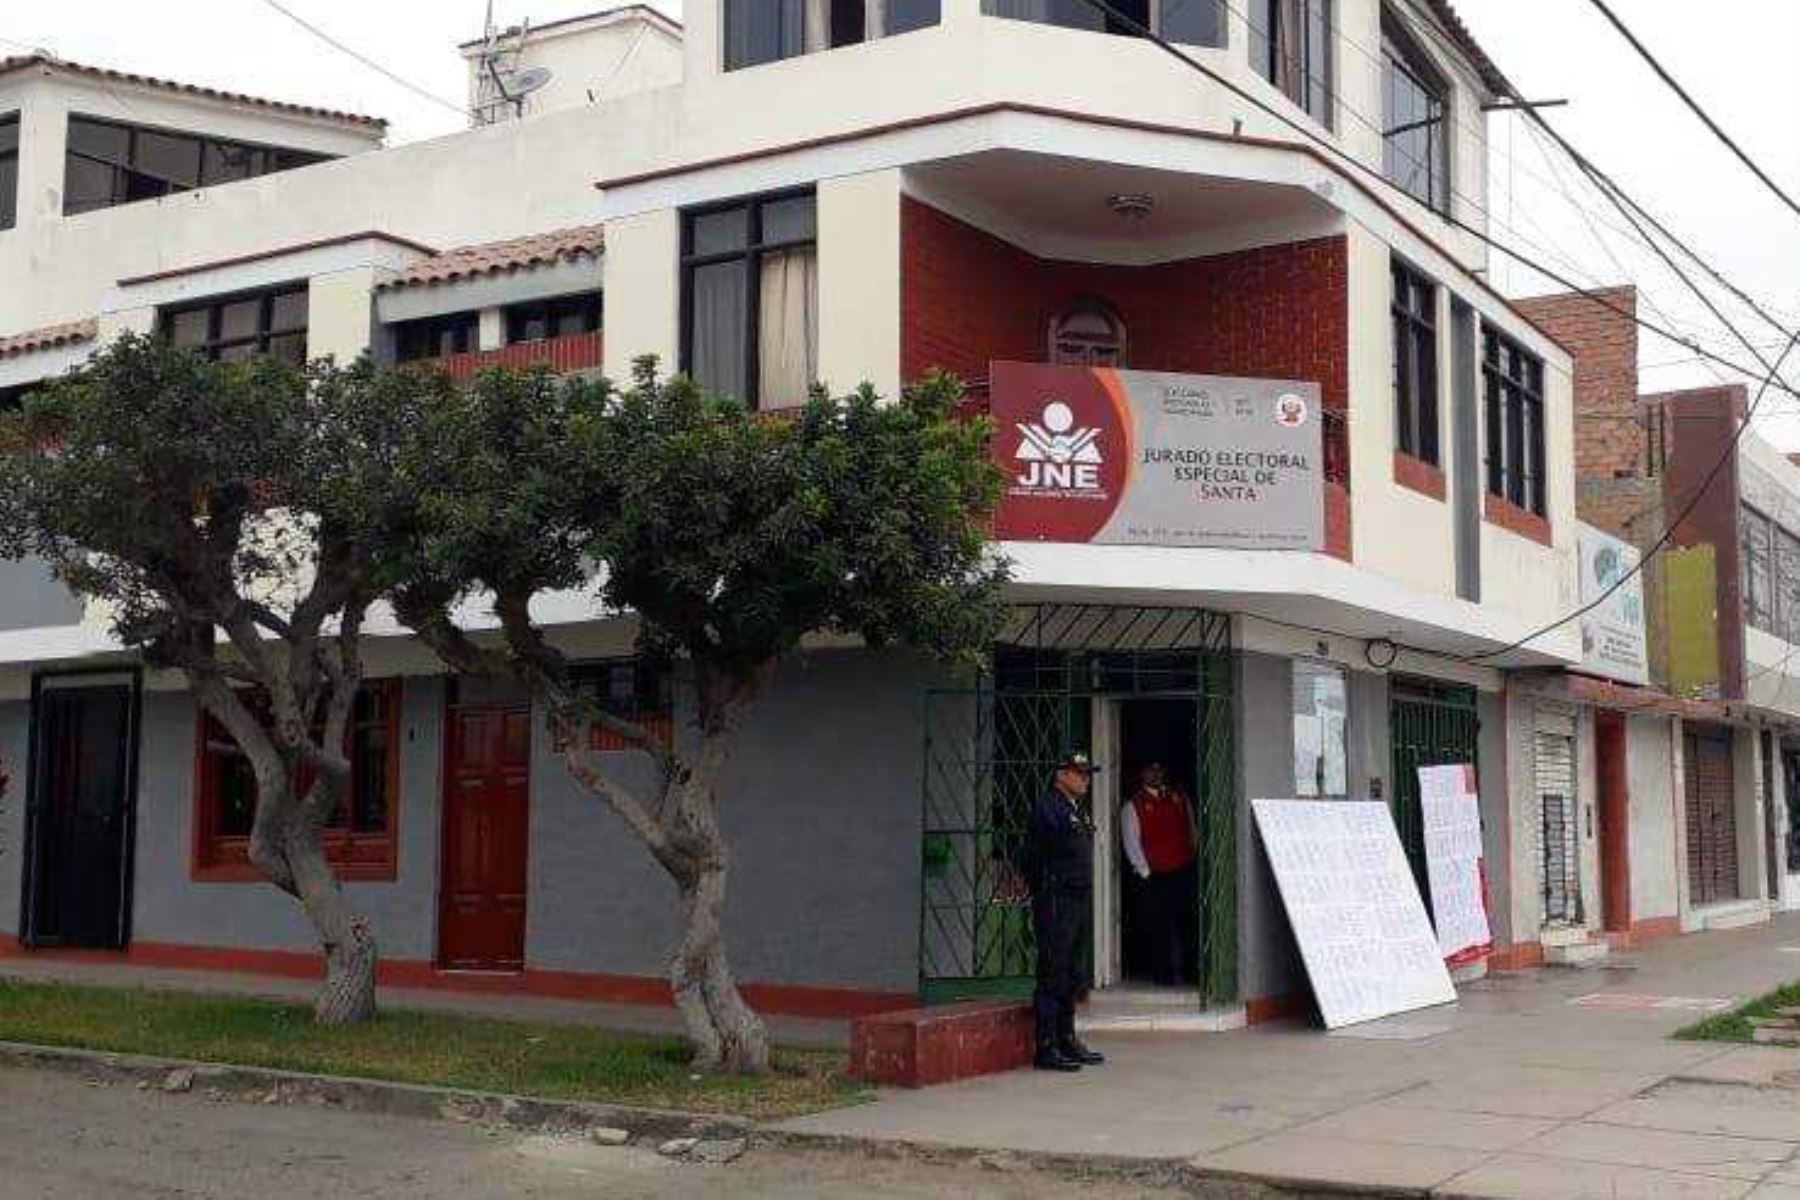 Sede del Jurado Electoral Especial del Santa, en la ciudad de Chimbote, región Áncash.